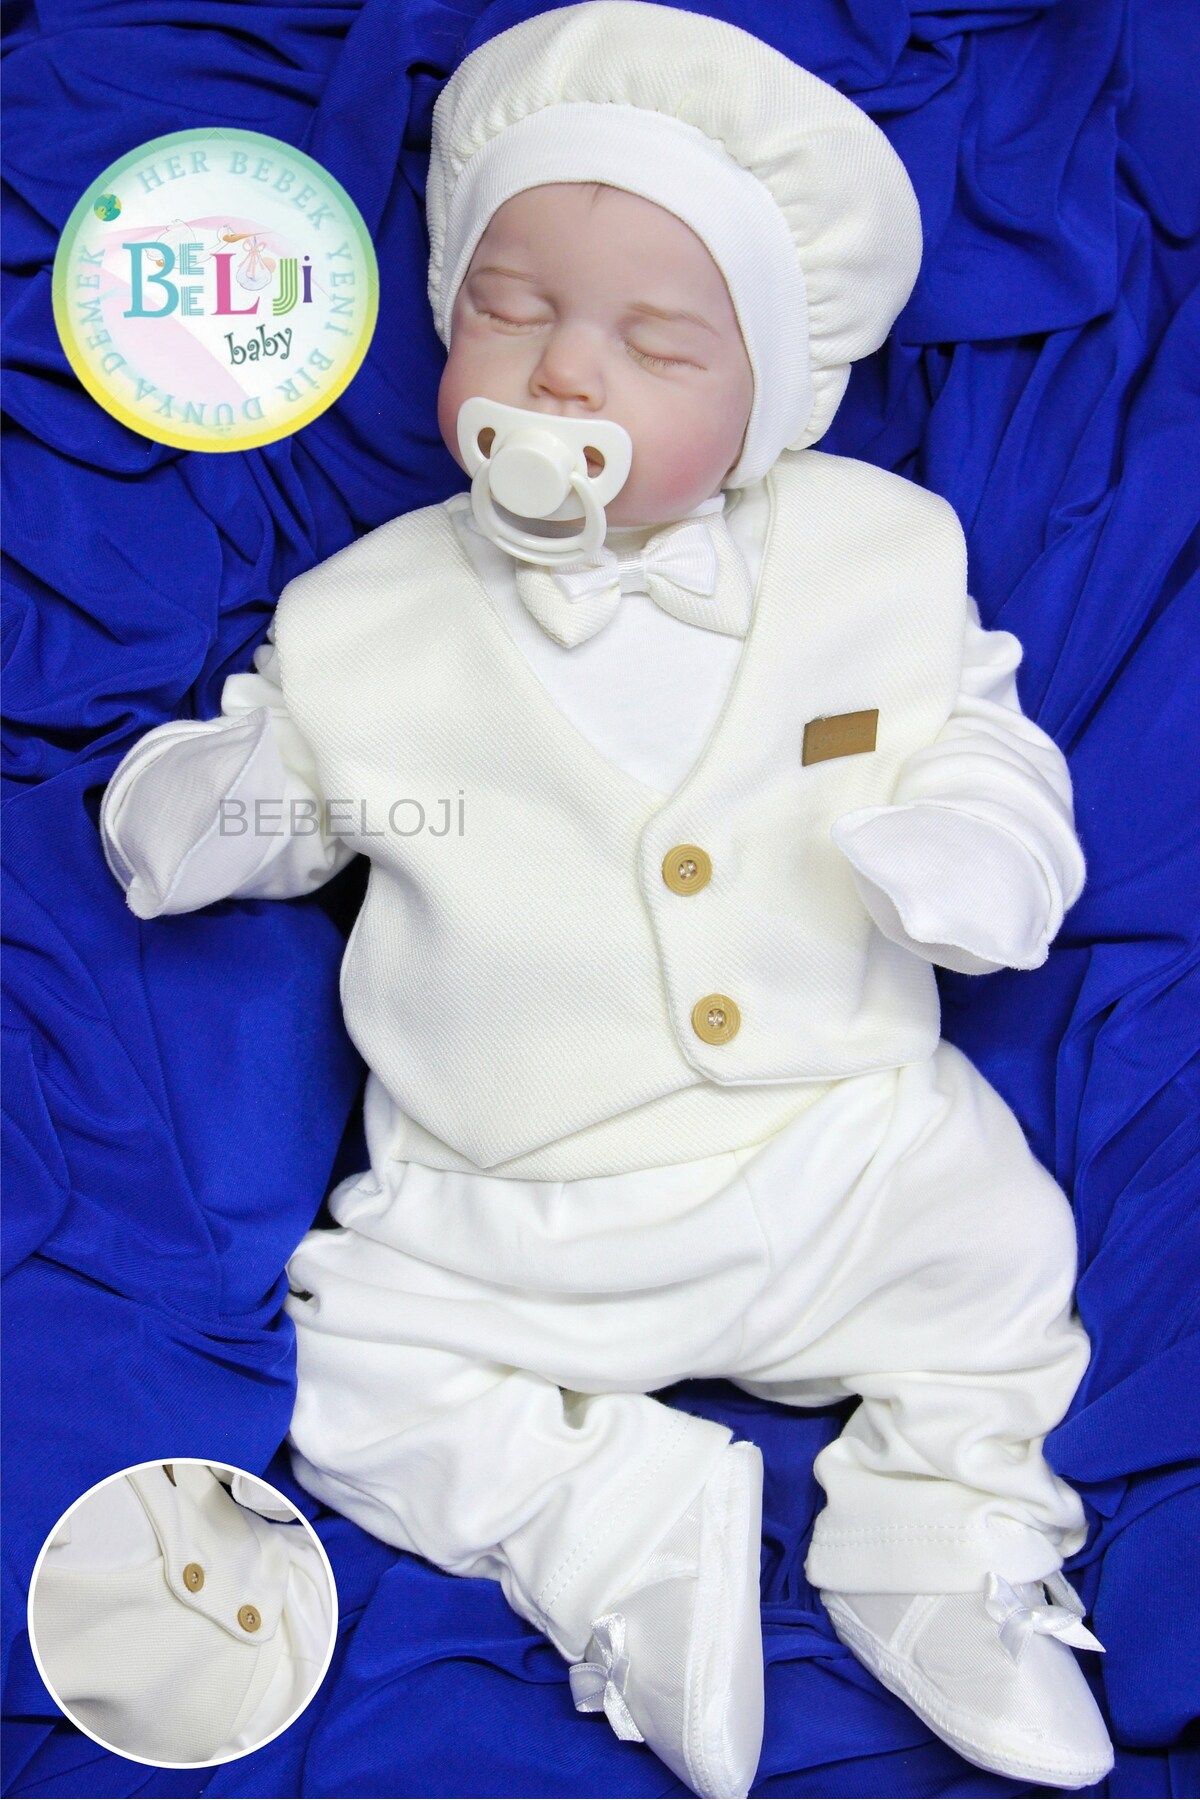 Bebeloji Baby Alvin Erkek Bebek Yenidoğan 5'li Hastane Çıkışı (yenidoğan kıyafeti)